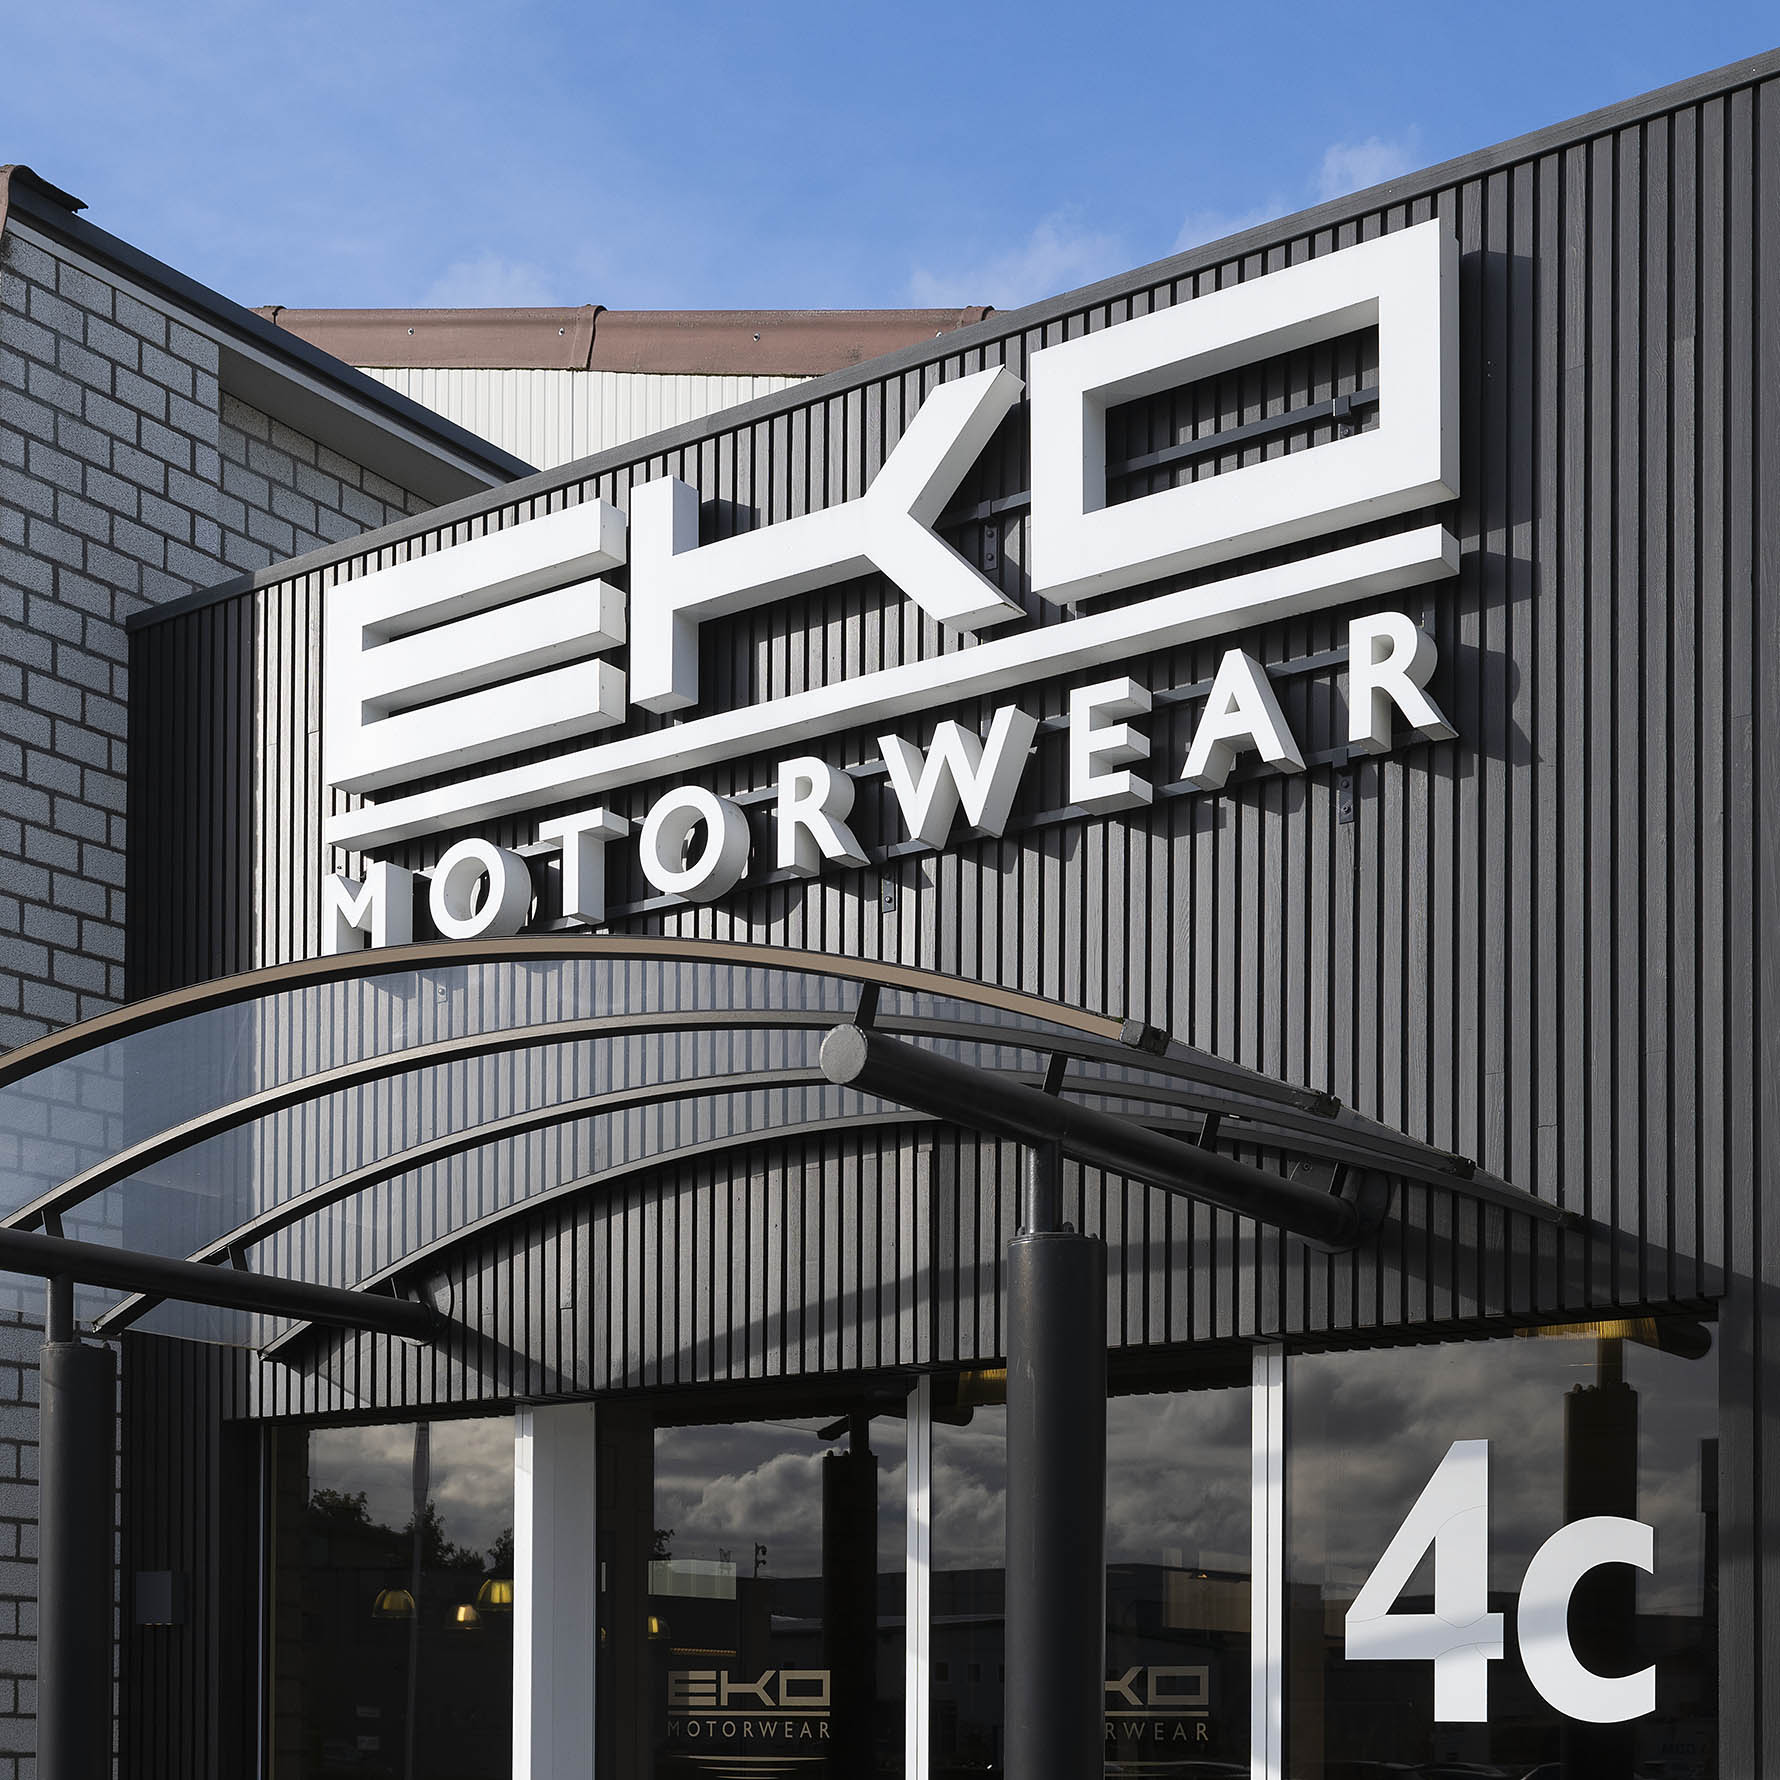 Arthur Los Fotografie - EKO motorwear